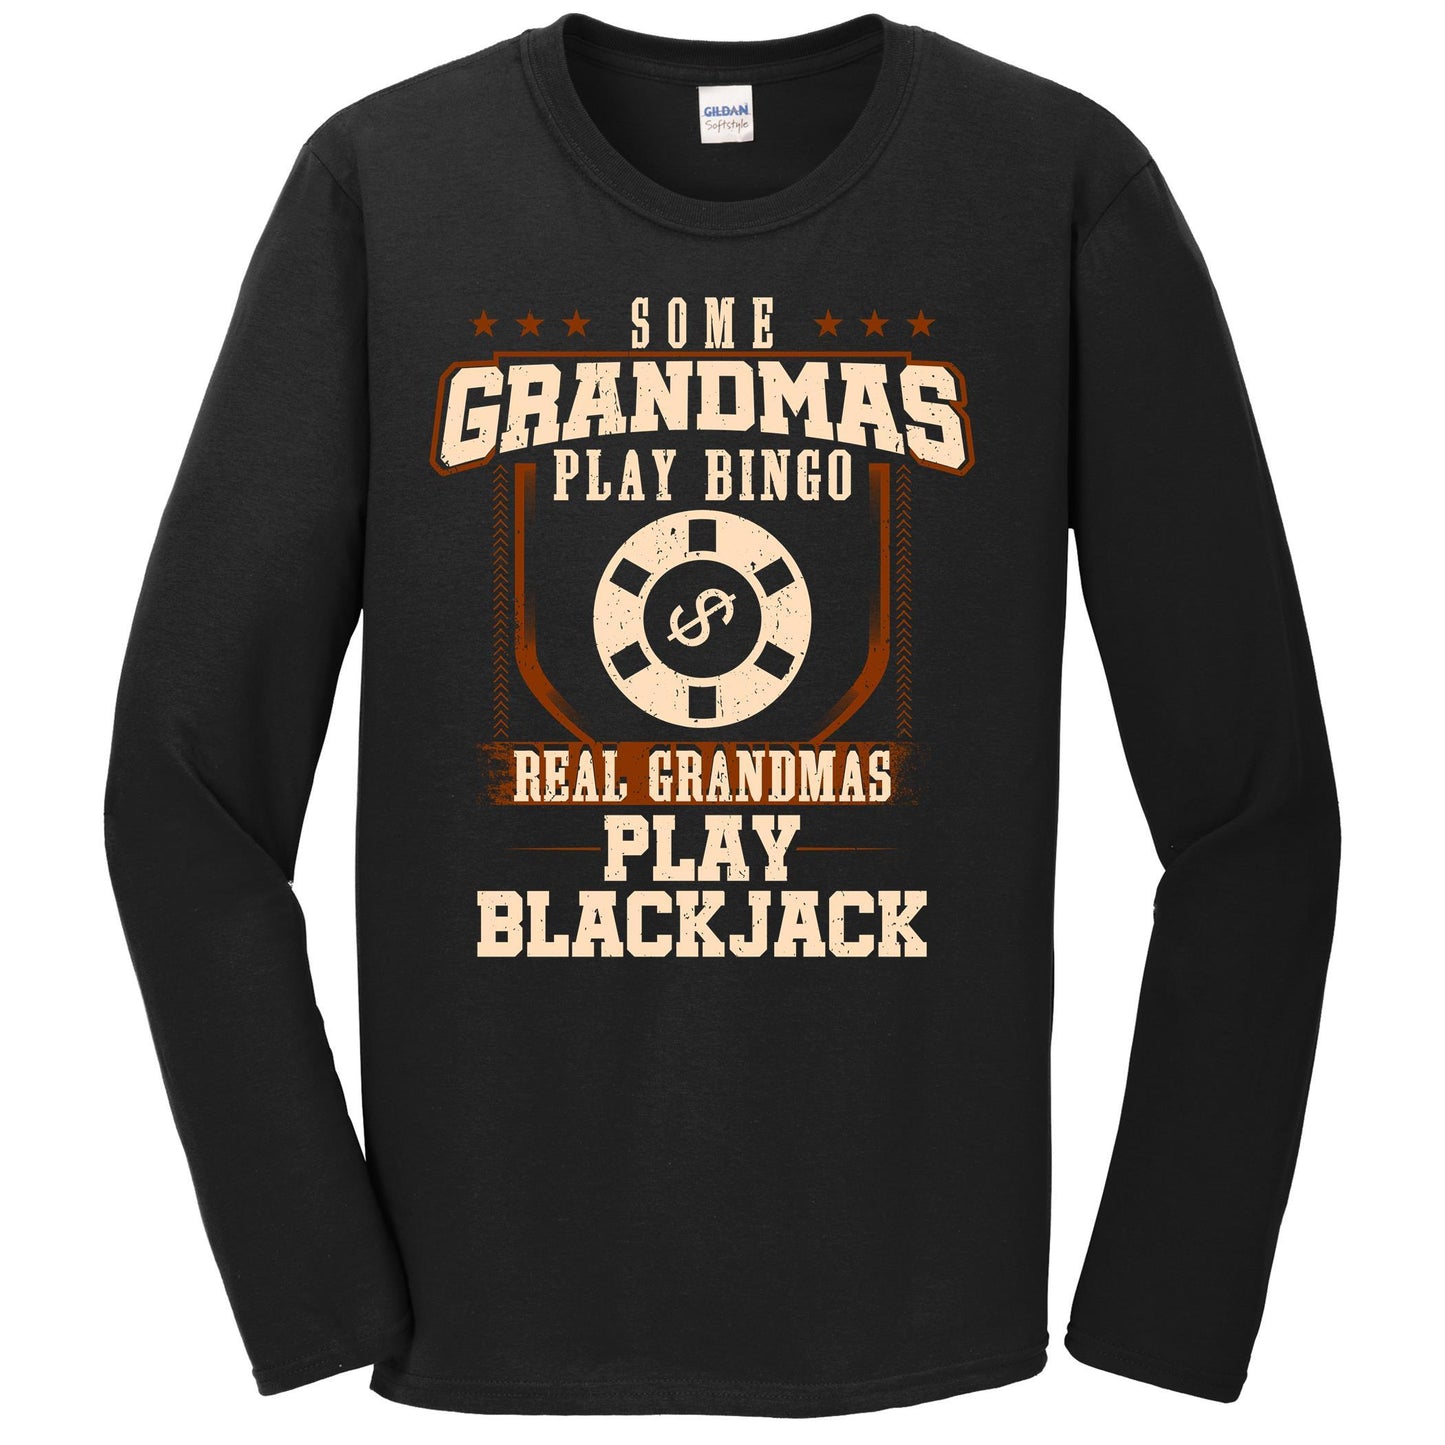 Some Grandmas Play Bingo Real Grandmas Play Blackjack Long Sleeve Shirt